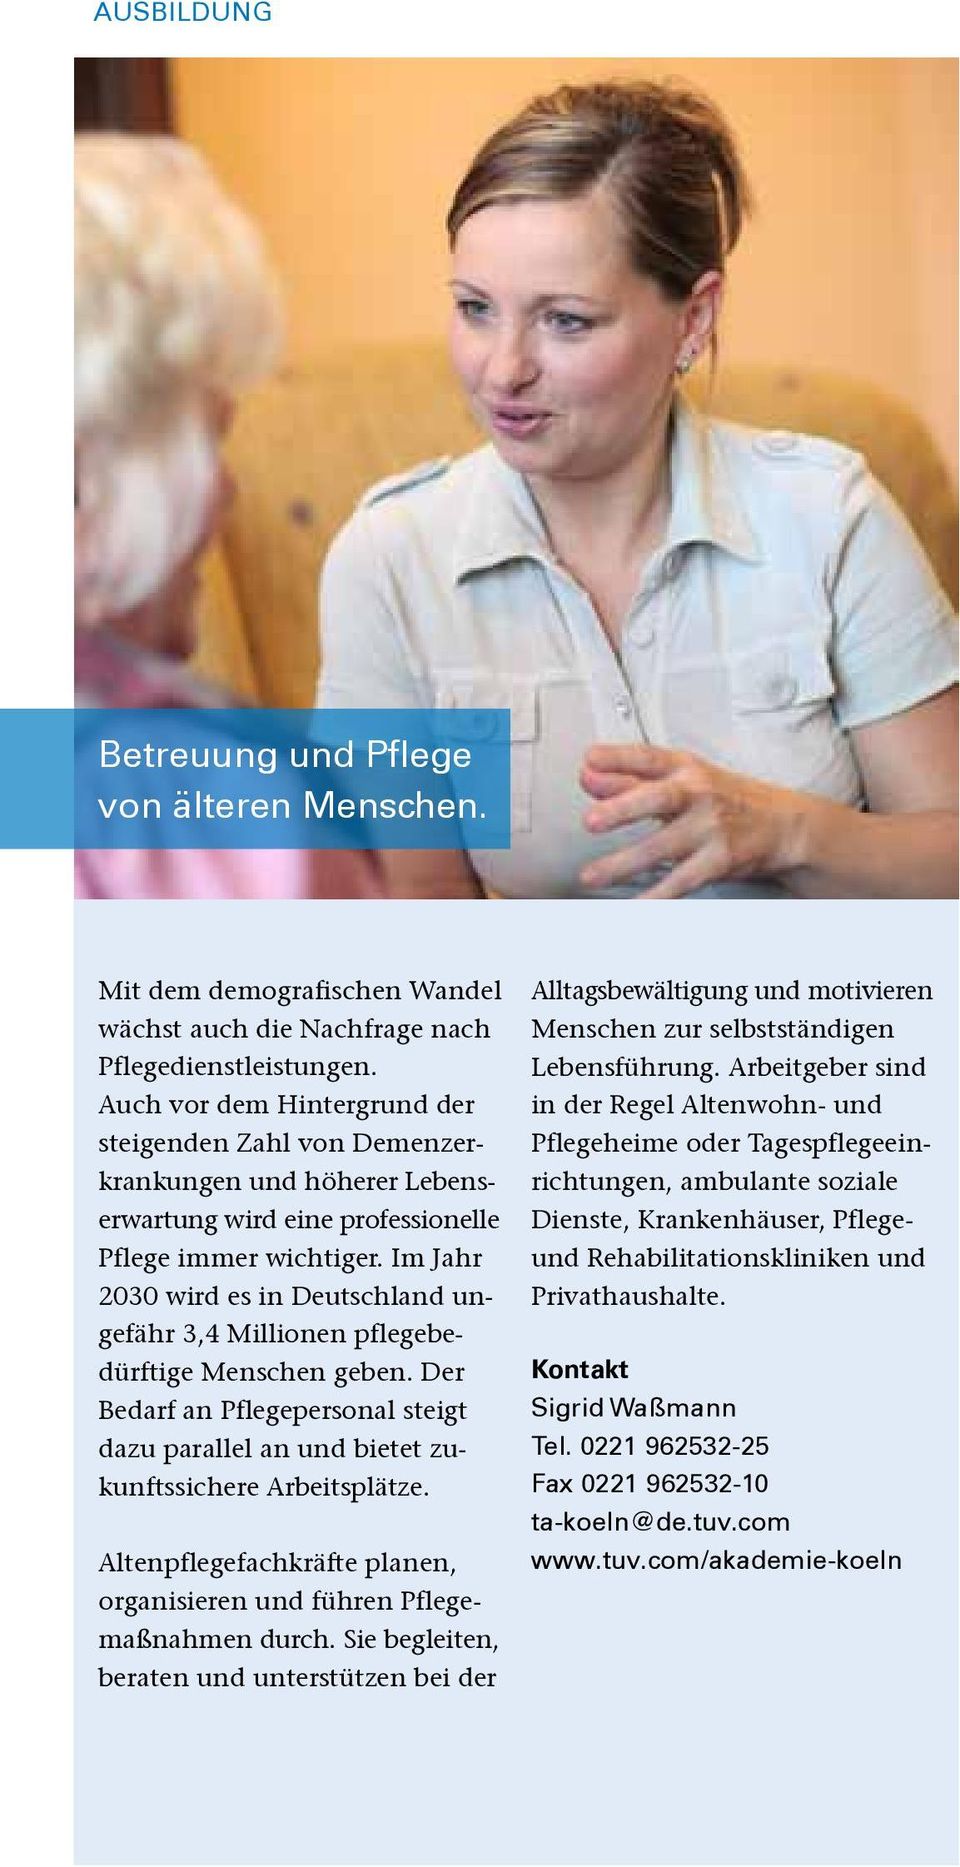 Im Jahr 2030 wird es in Deutschland ungefähr 3,4 Millionen pflegebedürftige Menschen geben. Der Bedarf an Pflegepersonal steigt dazu parallel an und bietet zukunftssichere Arbeitsplätze.